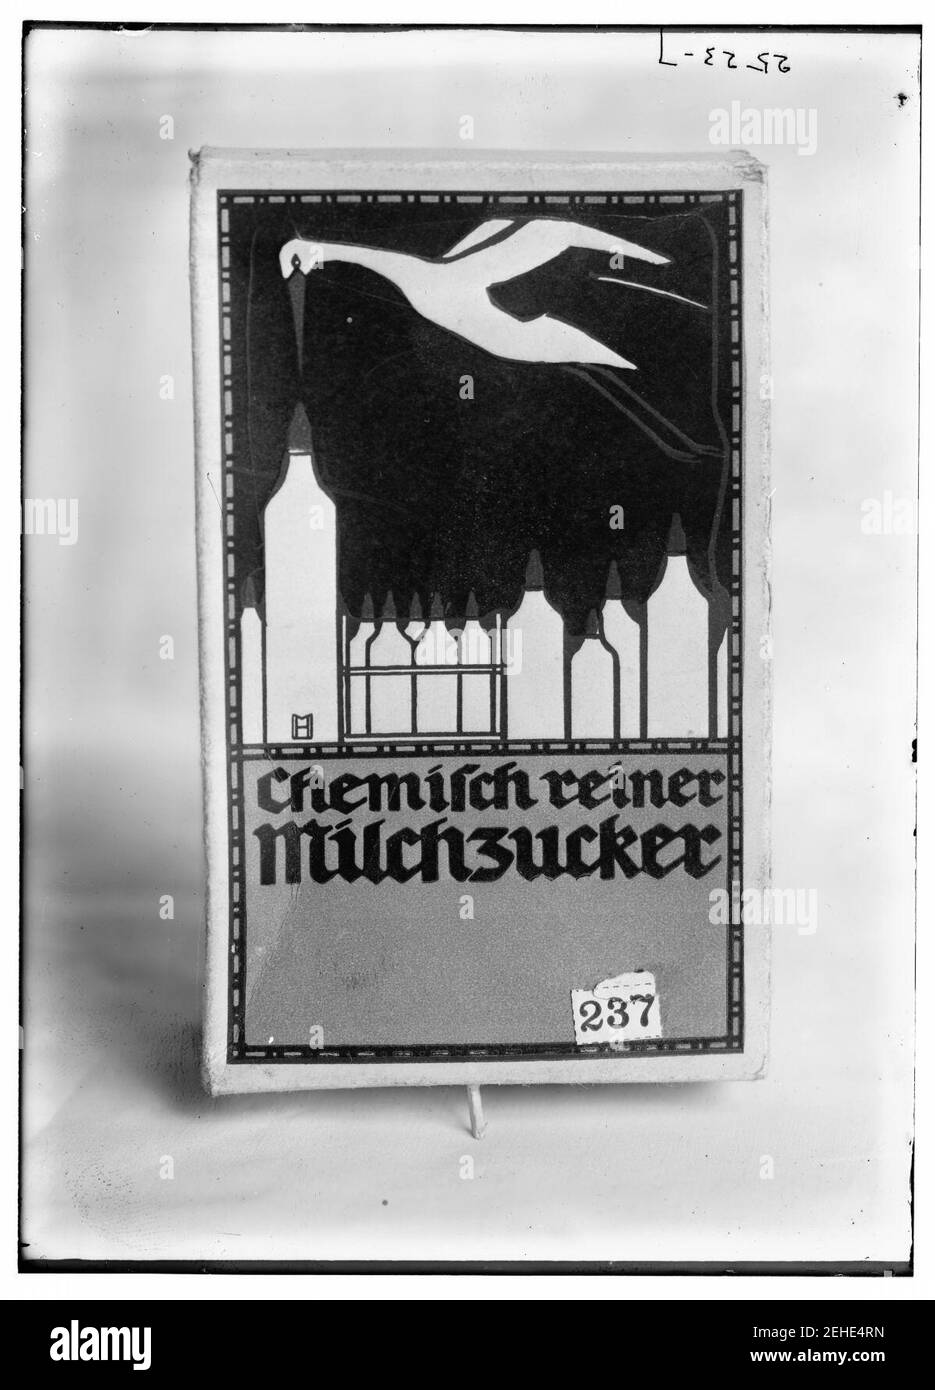 Pacchetto di Chemisch reiner Milchzucker (lattosio) Foto Stock